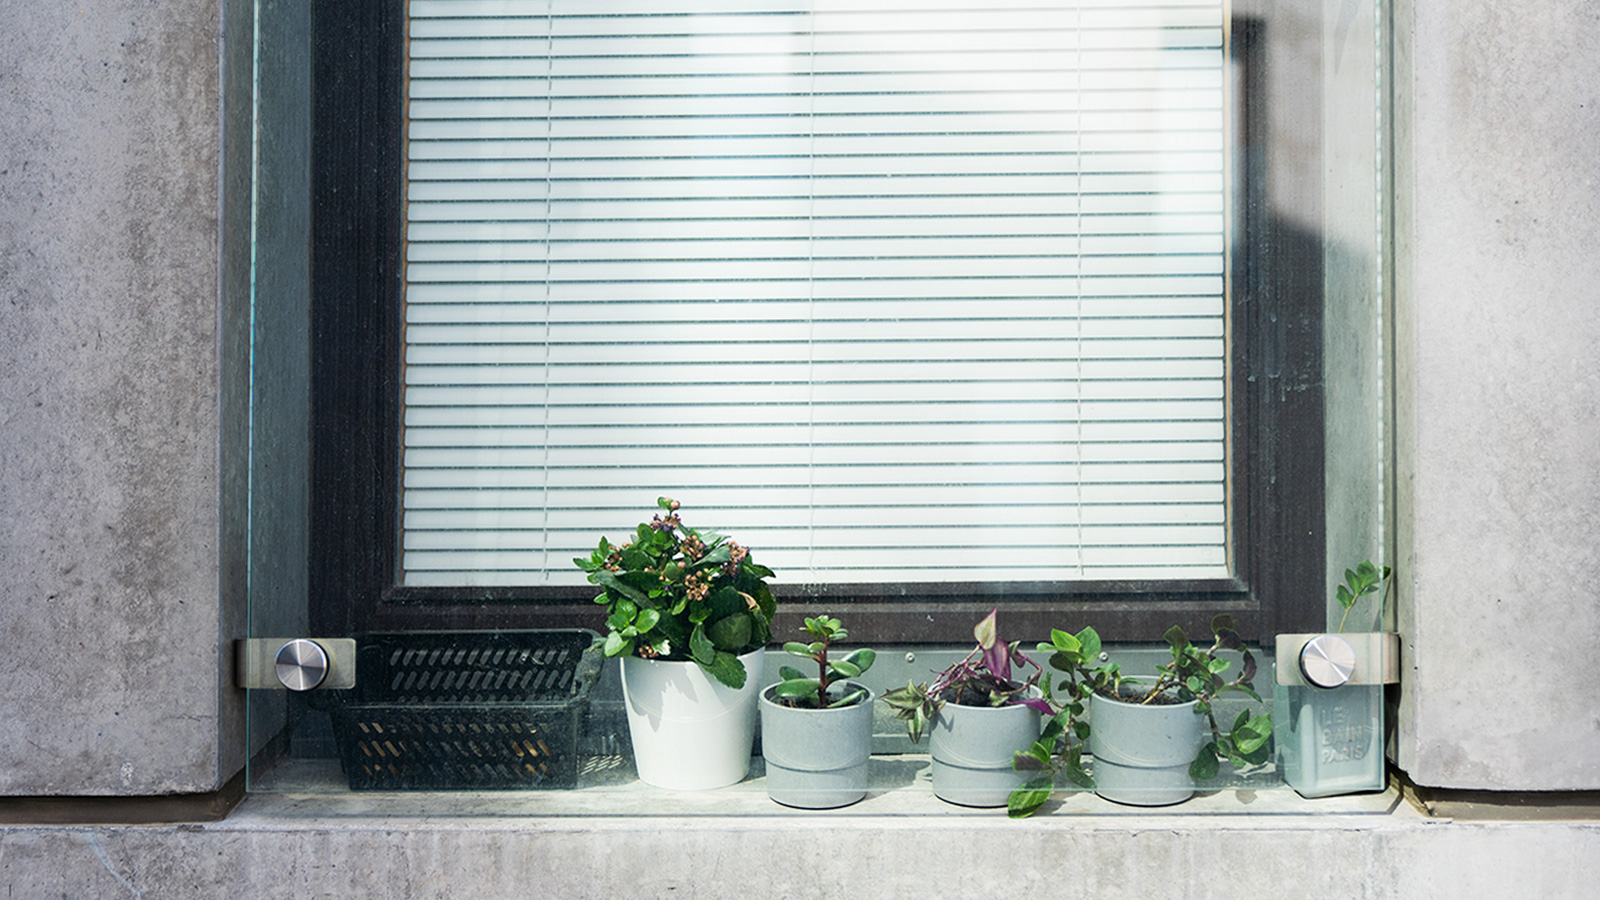 Krukväxter utanför fönster med persienner. 